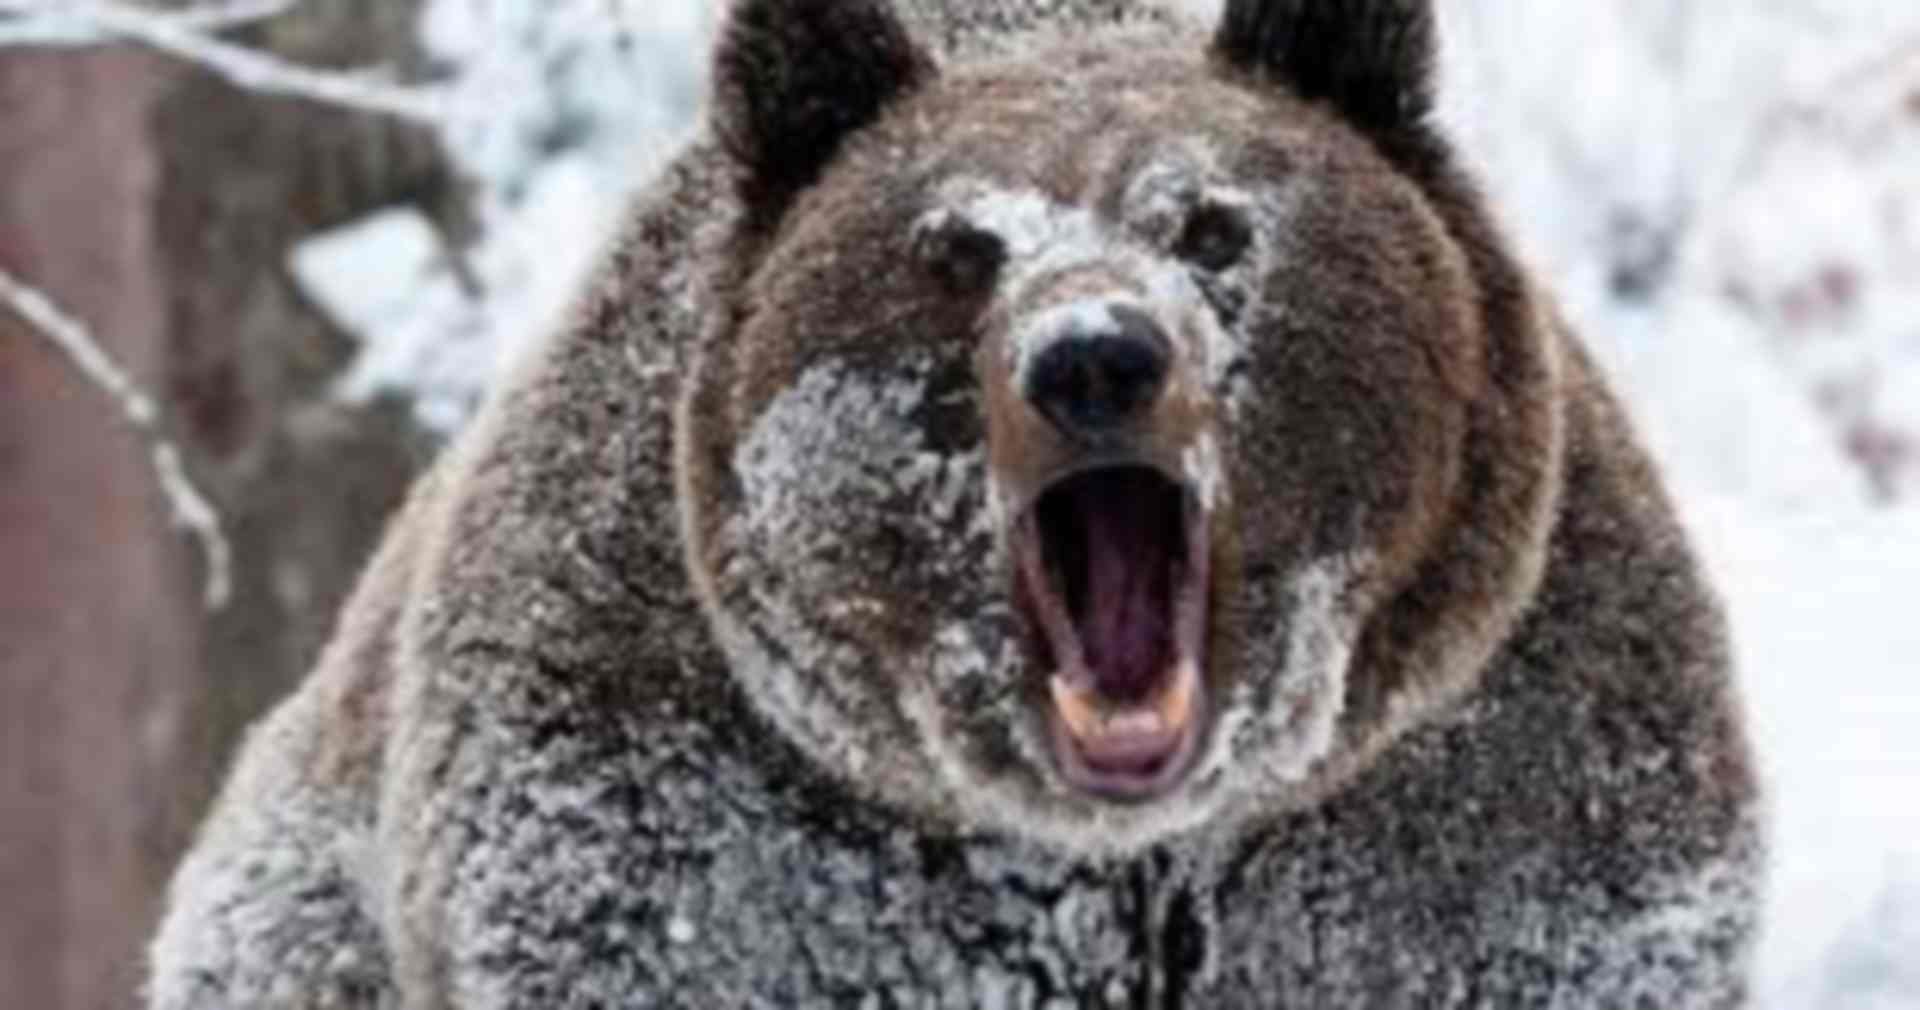 Опасная встреча зимой с медведем. Интересные истории про животных. Аудио рассказы.